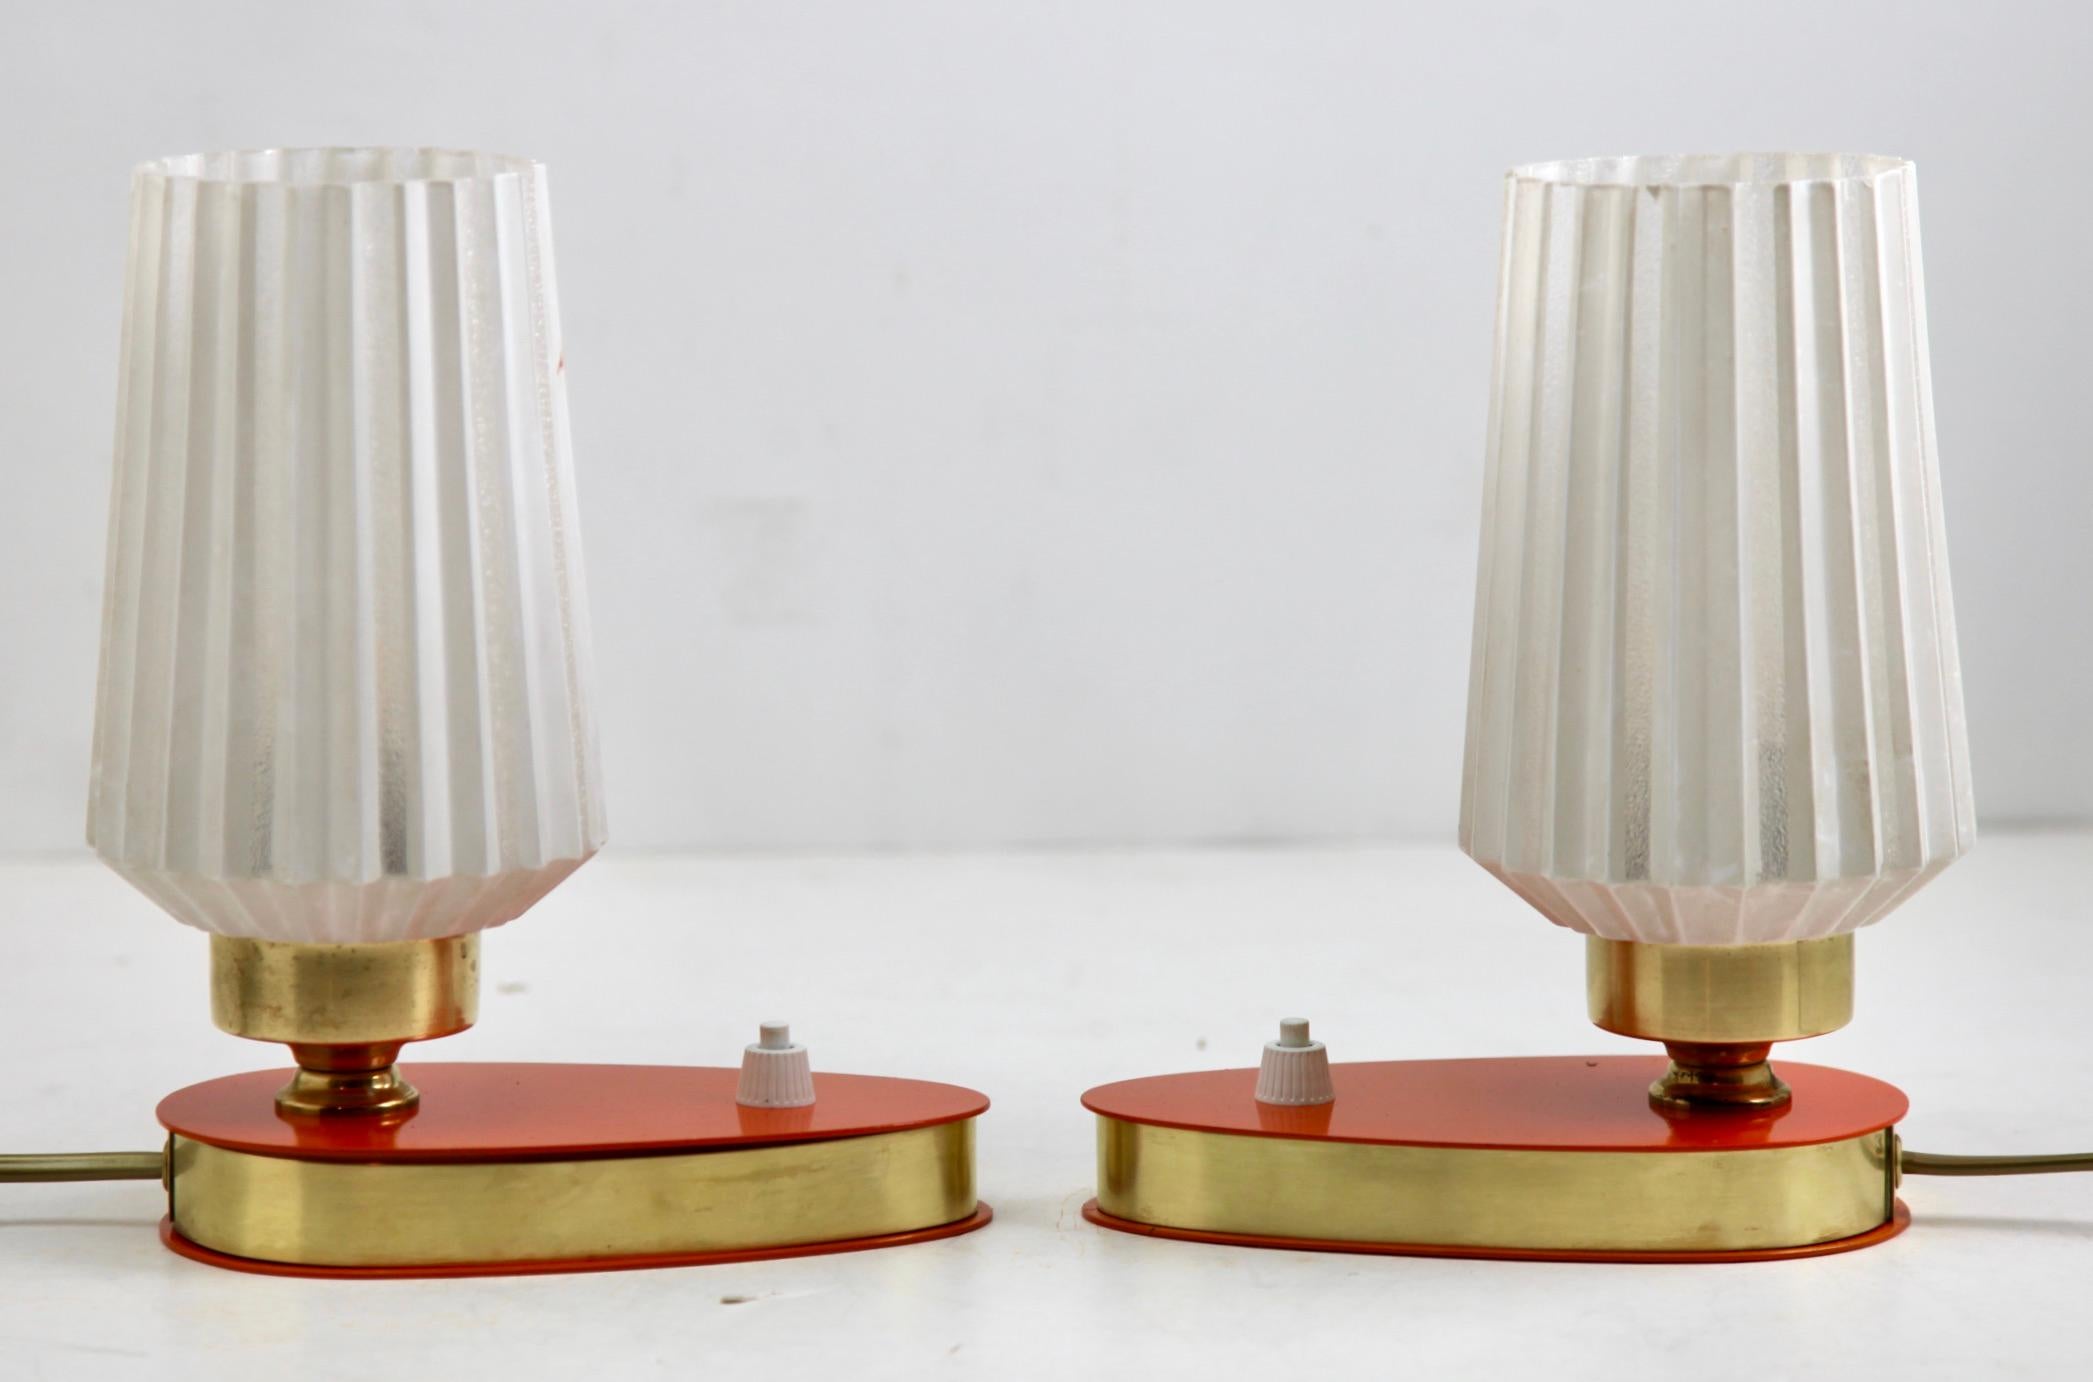 Ensemble de 2 lampes de table ou de bureau en laiton, fabriquées en Italie à la fin des années 1960.
La lampe est dotée d'une prise Edison E14 à vis.
Ayant récemment été re-câblées.
En excellent état de fonctionnement et en parfait état de